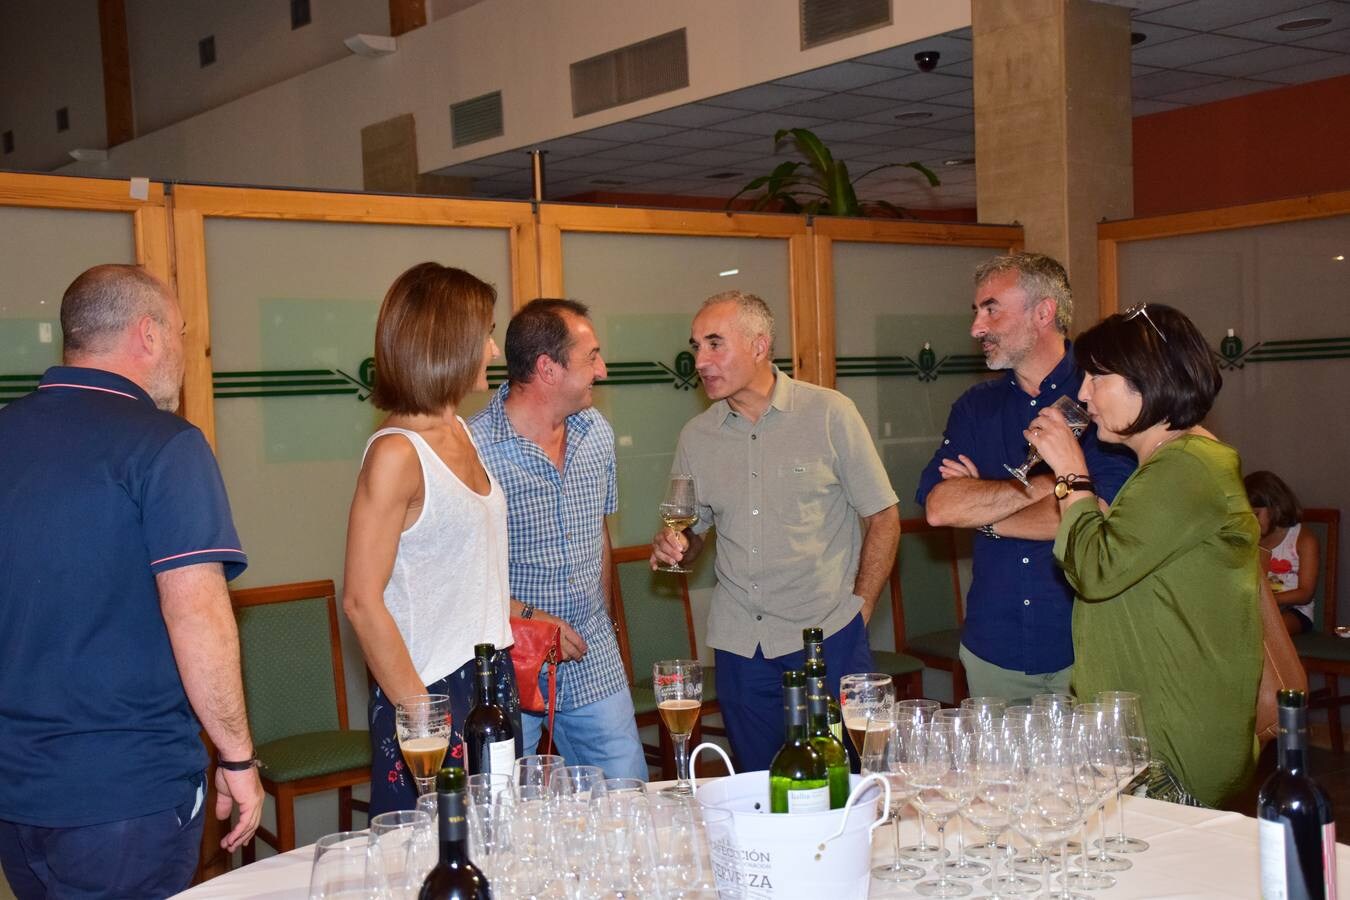 Los participantes en el torneo Viña Ijalba disfrutaron tras la jornada de varios vinos de la bodega logroñesa.